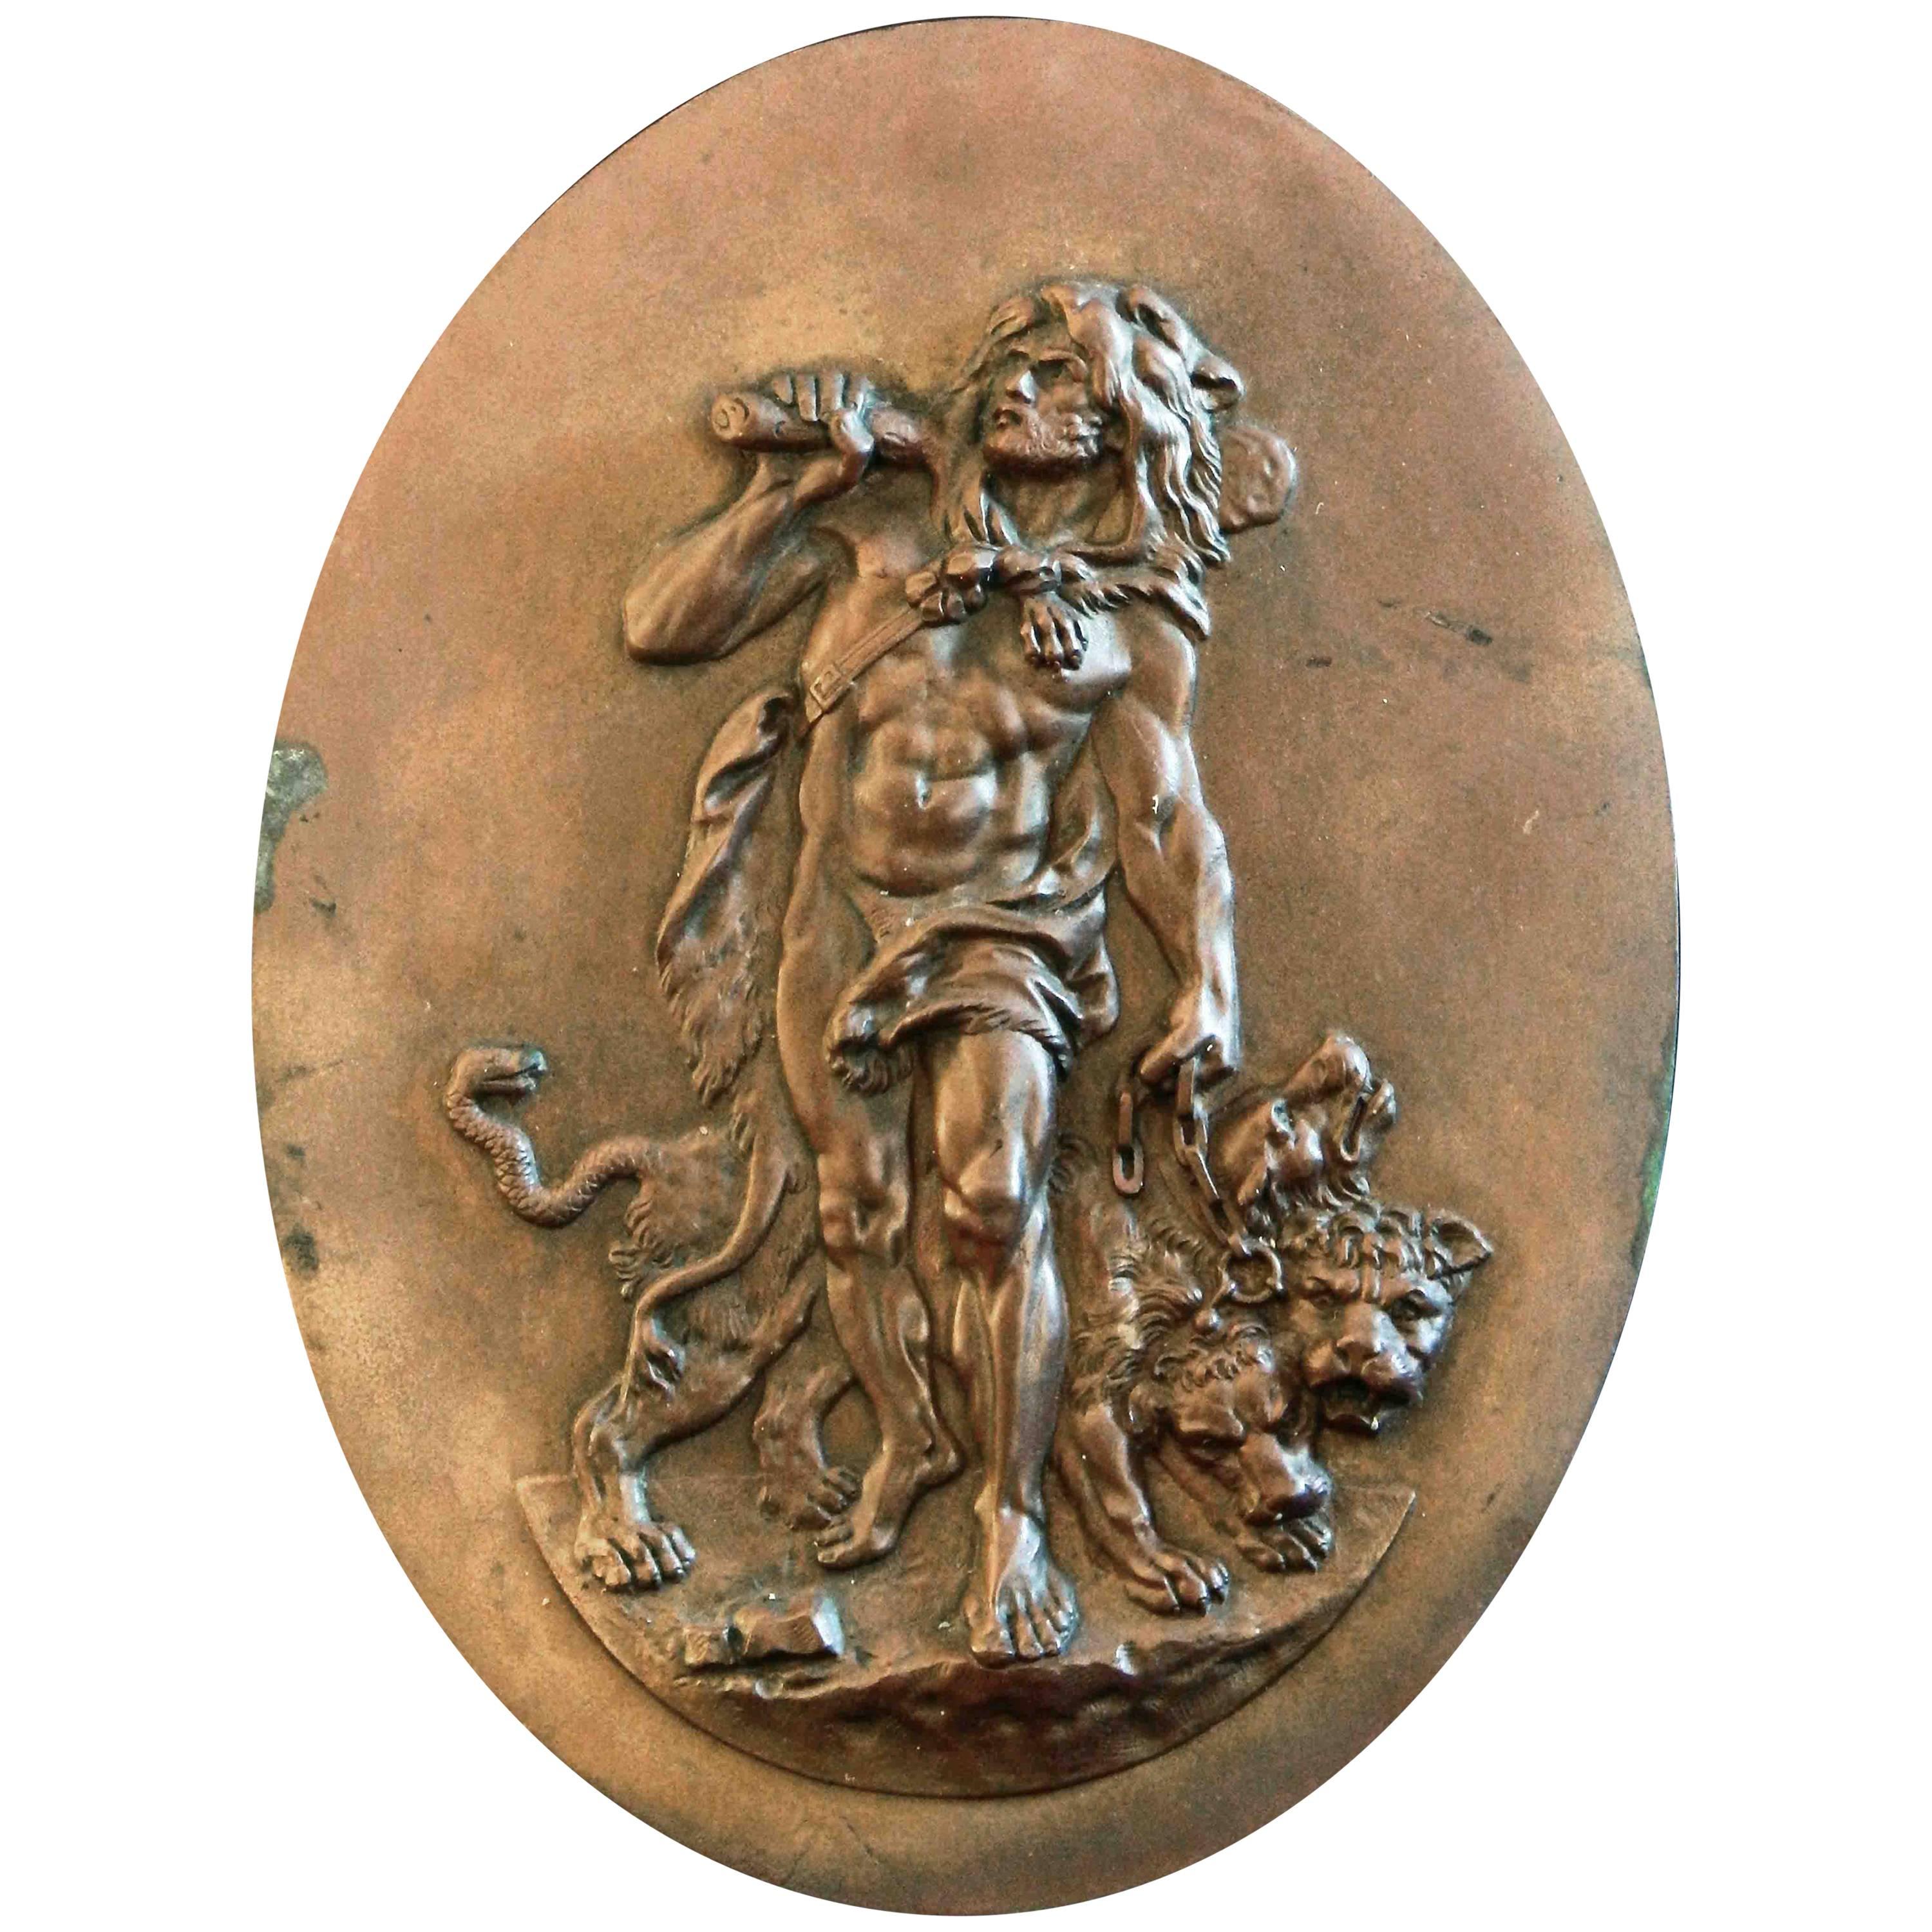 "Twelfth Labor of Hercules, " Bronze Relief Panel Depicting Hercules & Cerberus For Sale